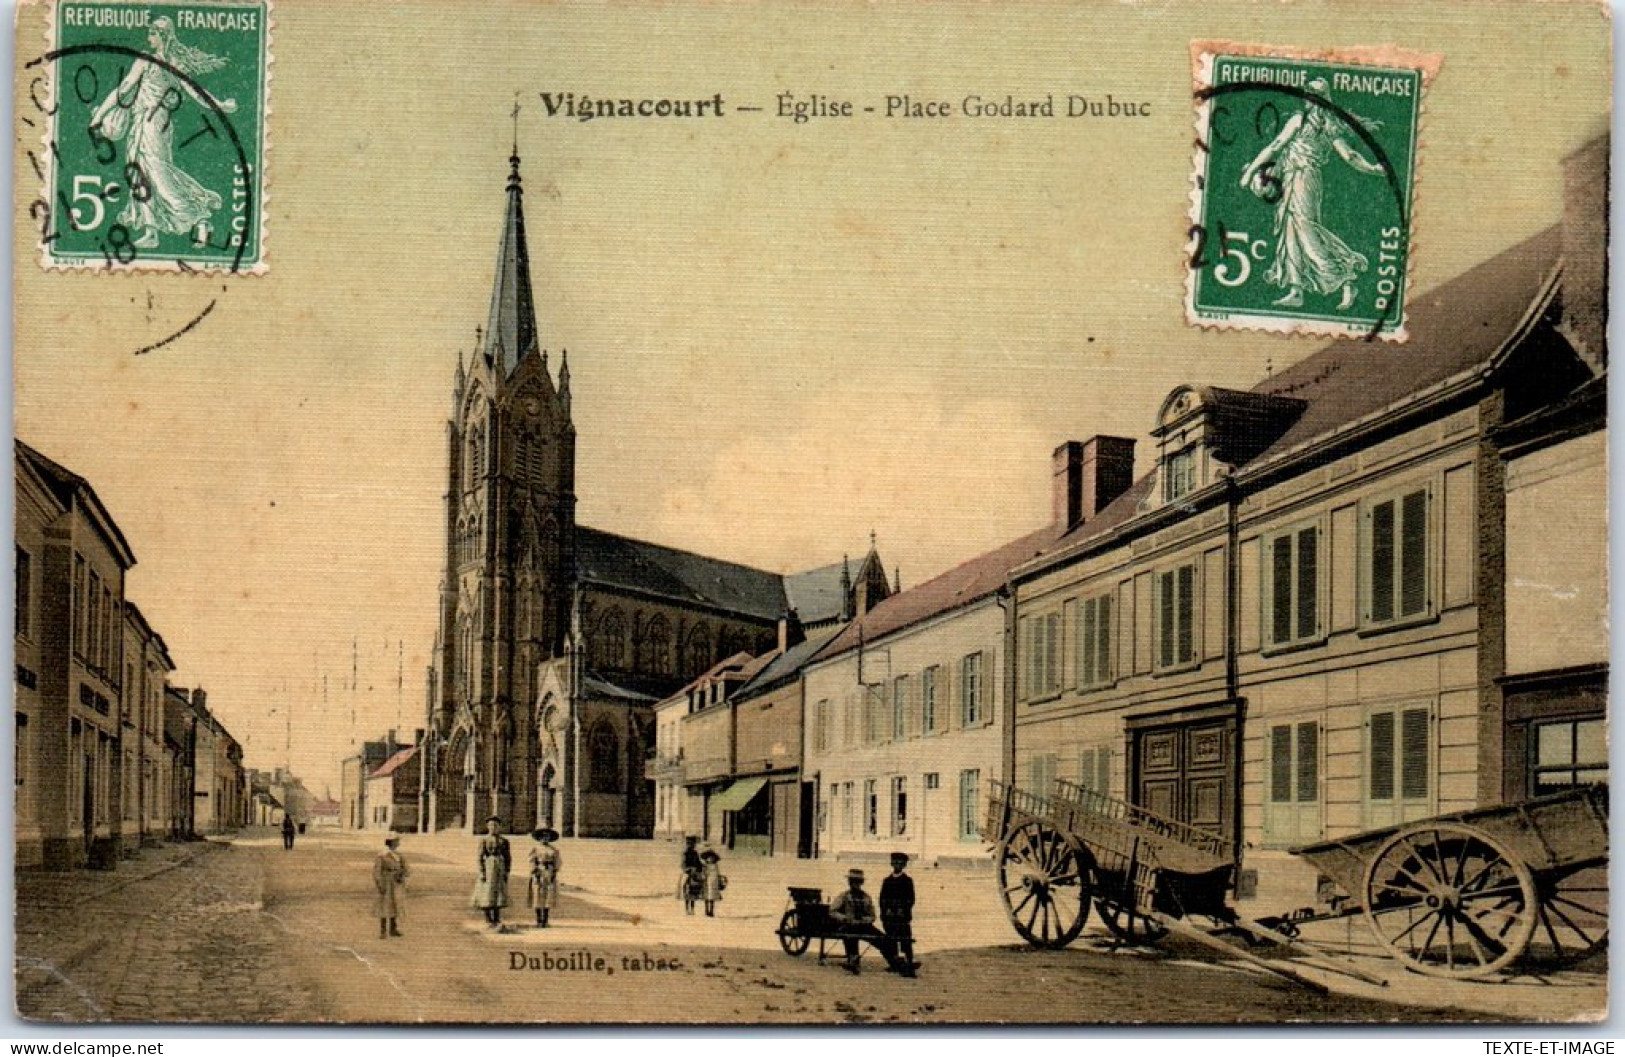 80 VIGNACOURT - Eglise & Place Godard Dubuc. - Vignacourt